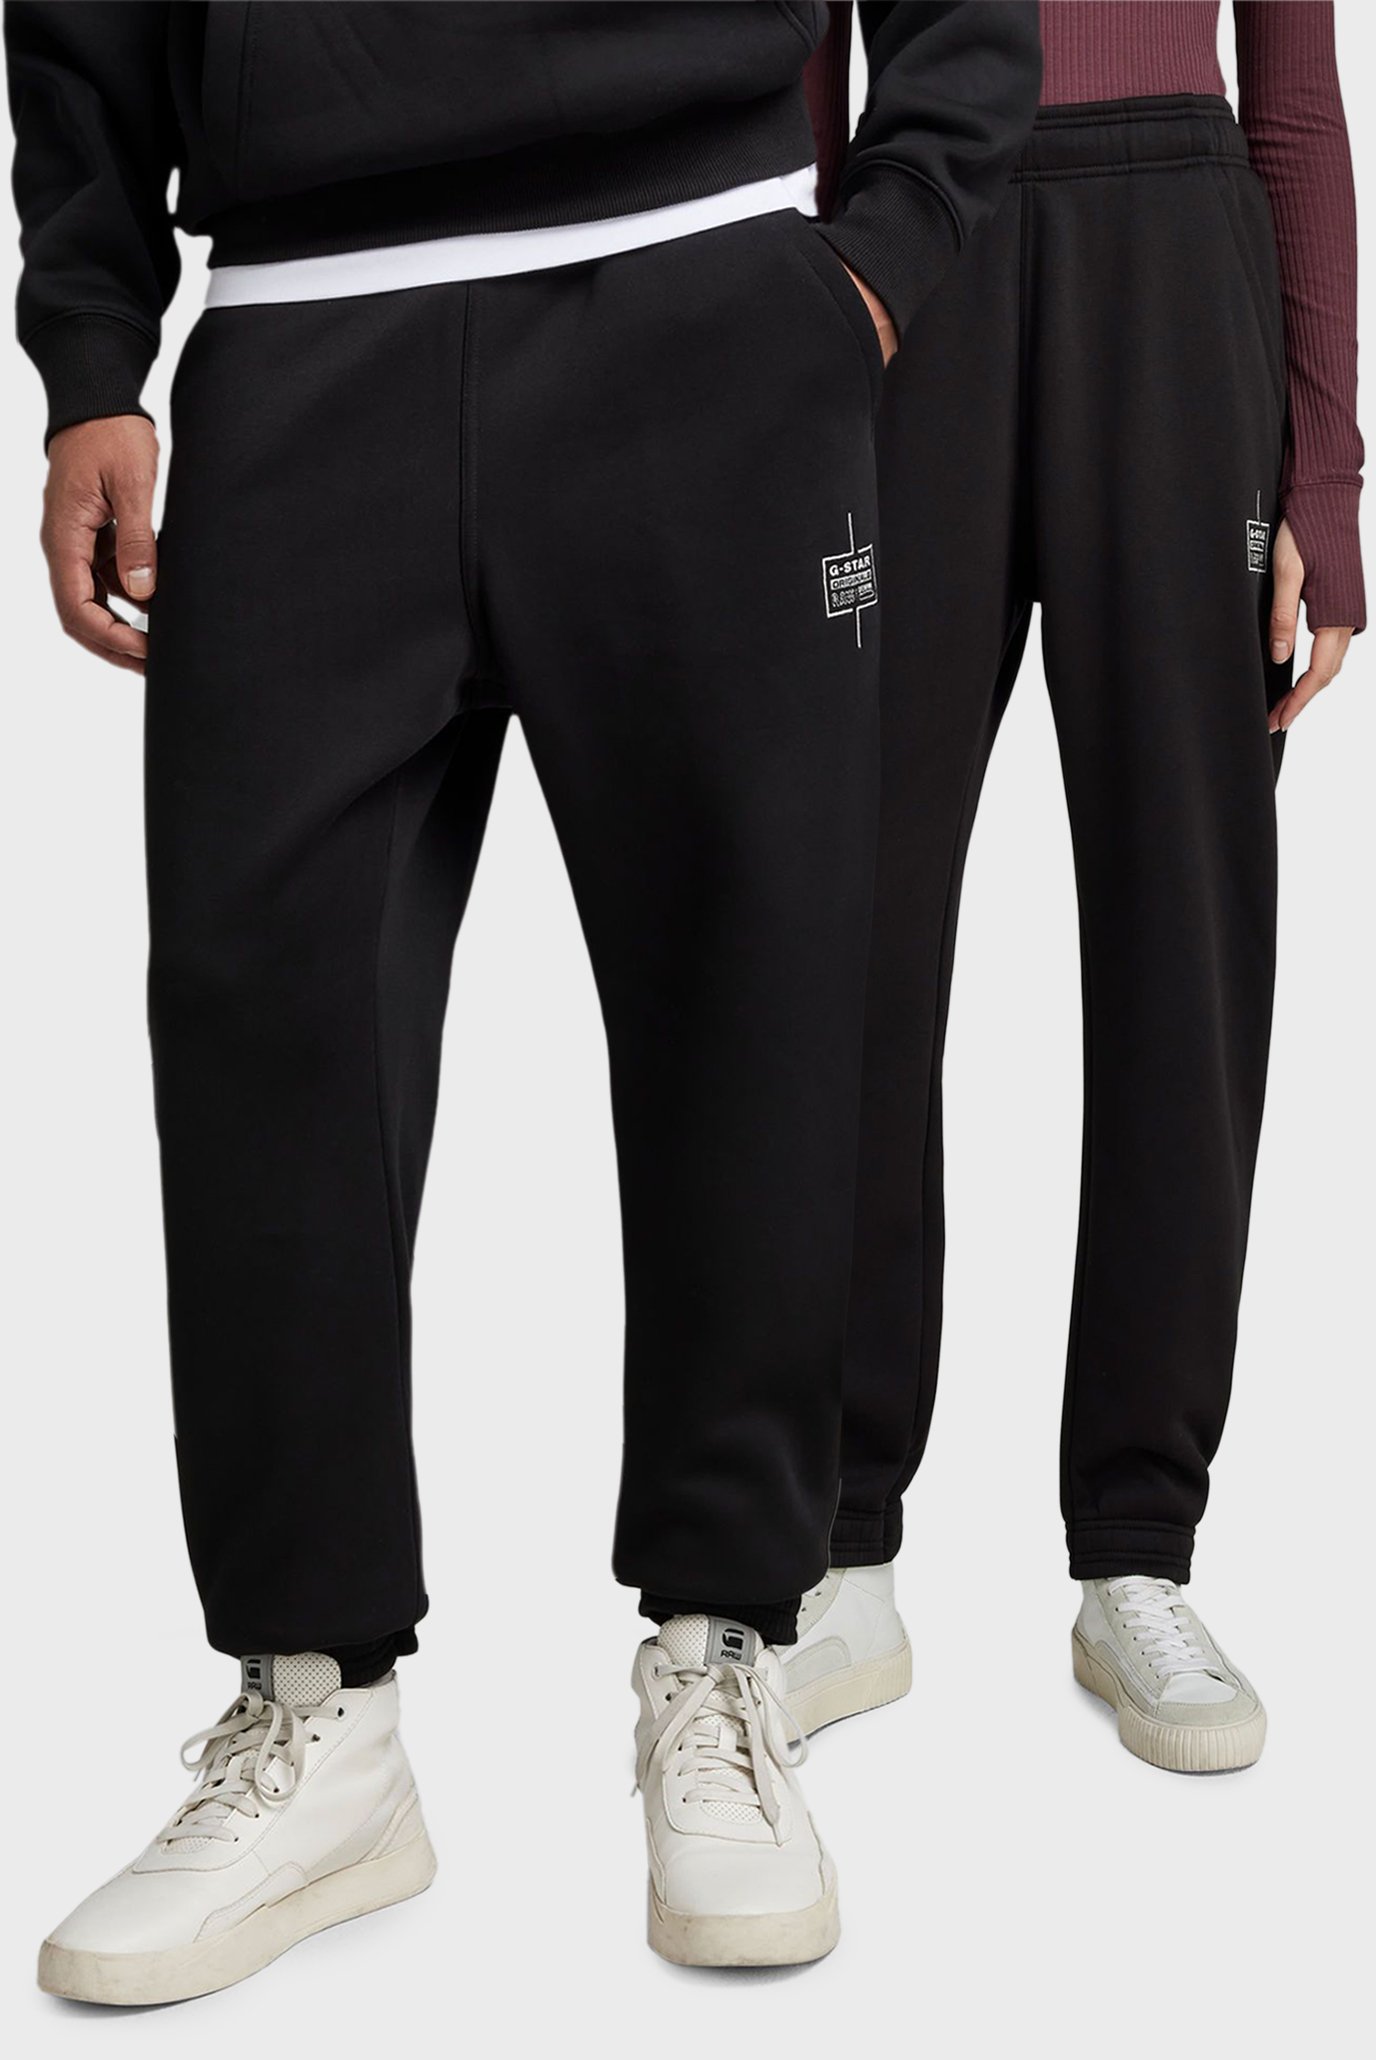 Чорні спортивні штани Unisex core tapered (унісекс) 1